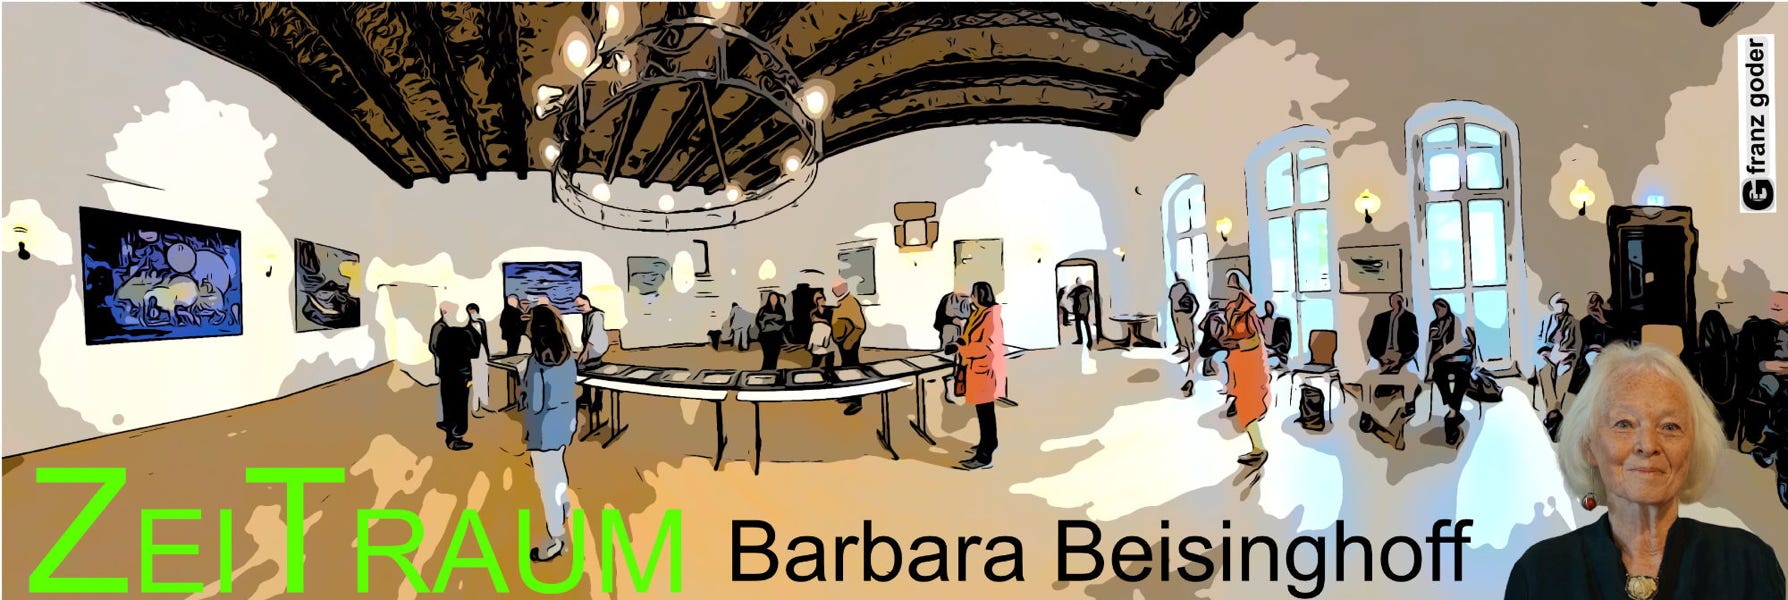 Barbara Beisinghoff - Zeitraum - Ausstellung Burg Dringenberg - Header - Montage